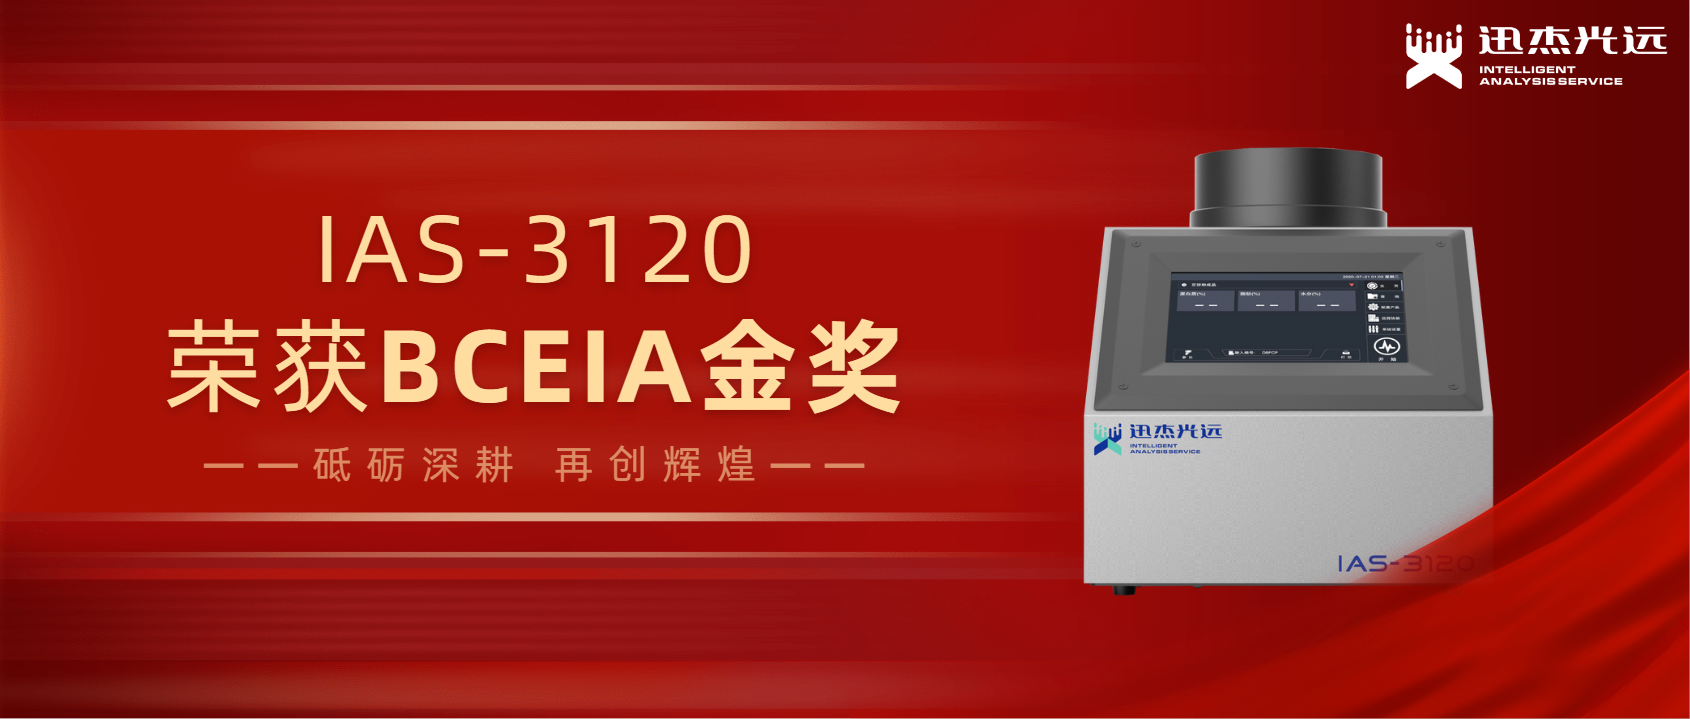 迅杰光远IAS-3120荣获BCEIA金奖，推动中国分析仪器产业发展